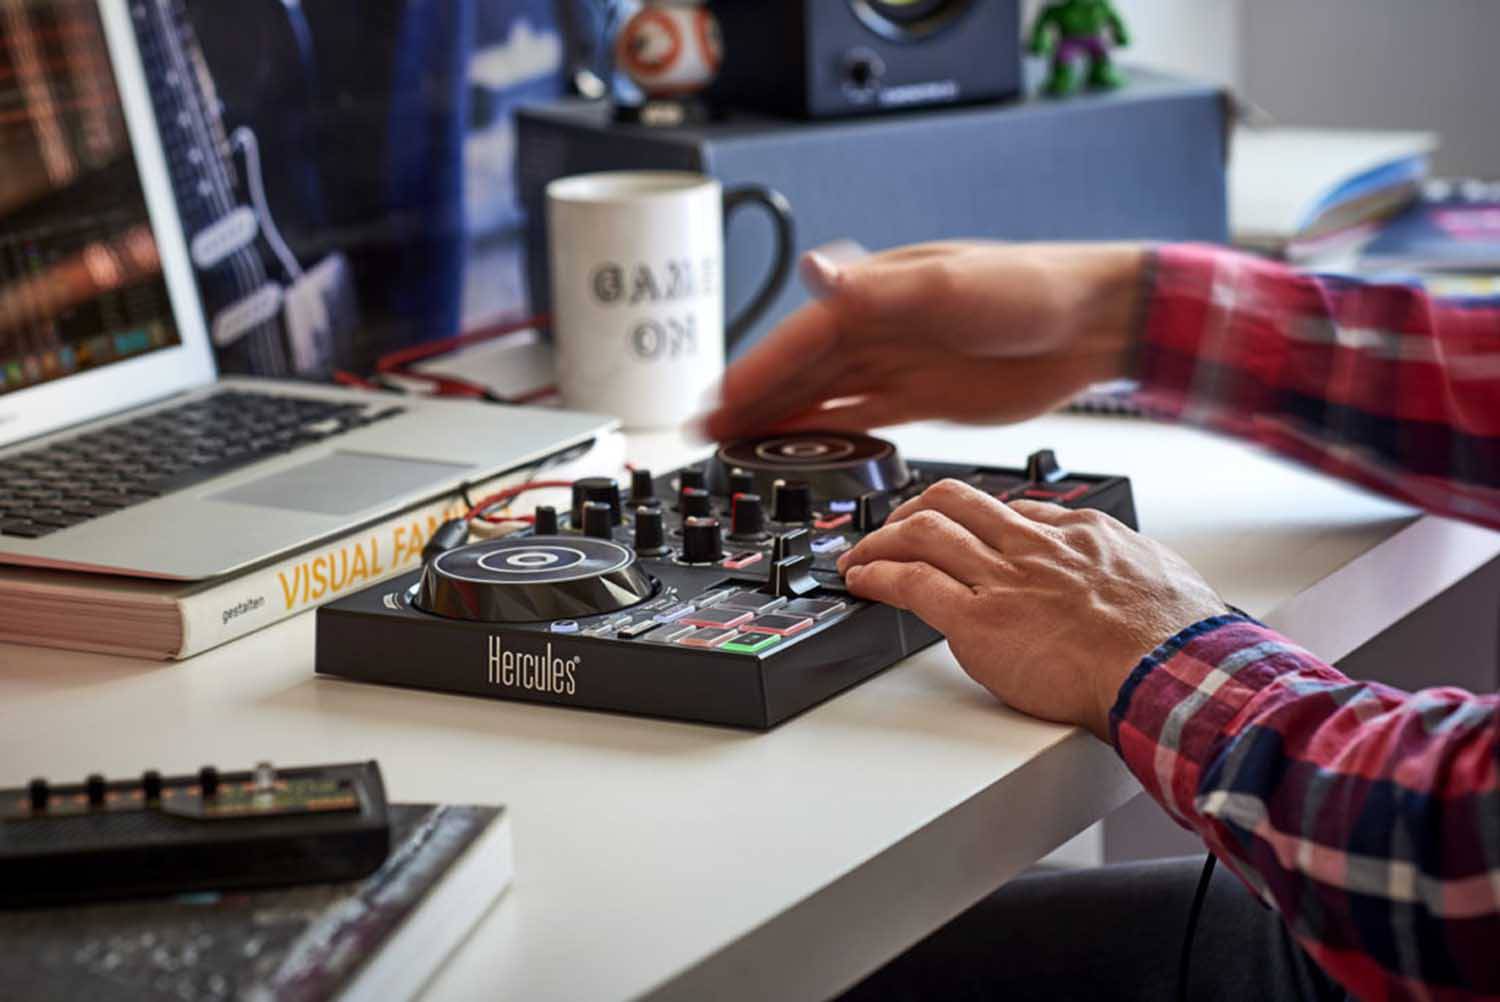 Hercules DJ Control Inpulse 200 With Built-In Audio Interface DJ Controller - Hollywood DJ